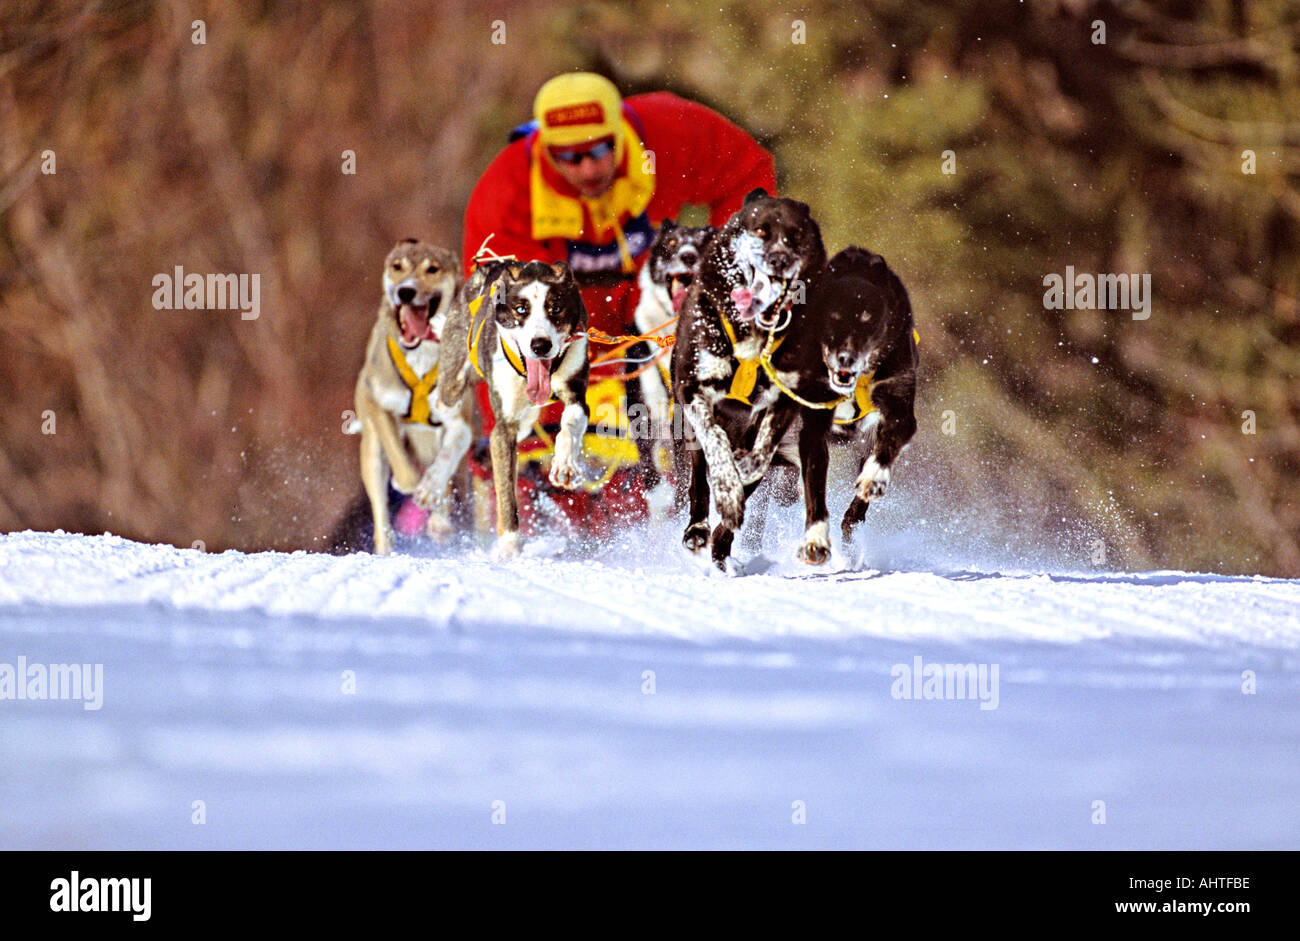 Sled Dog Racer 1 Stock Photo